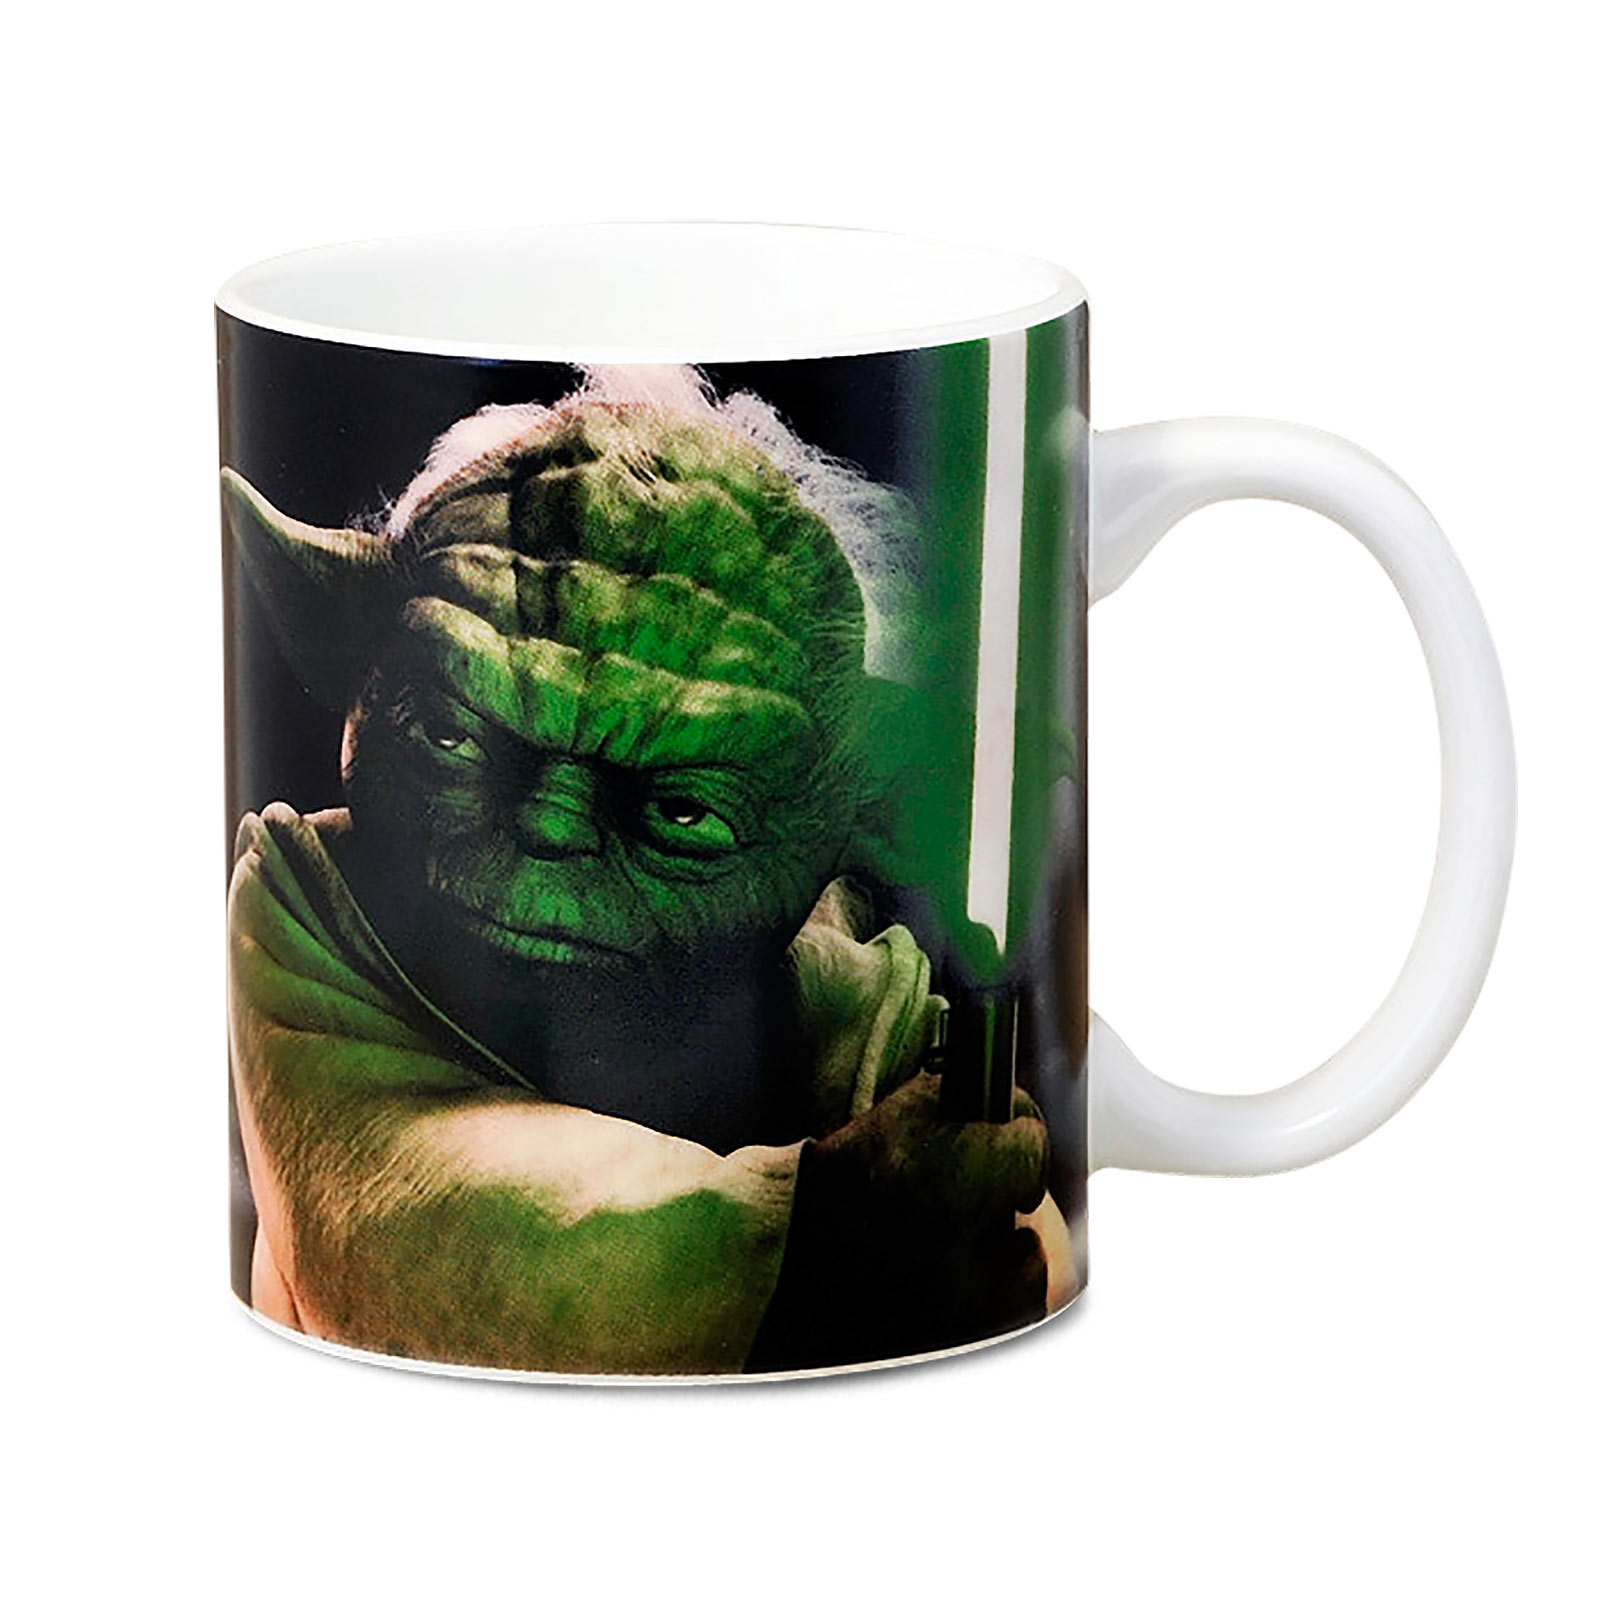 Star Wars - Yoda Master Of The Jedi Mug